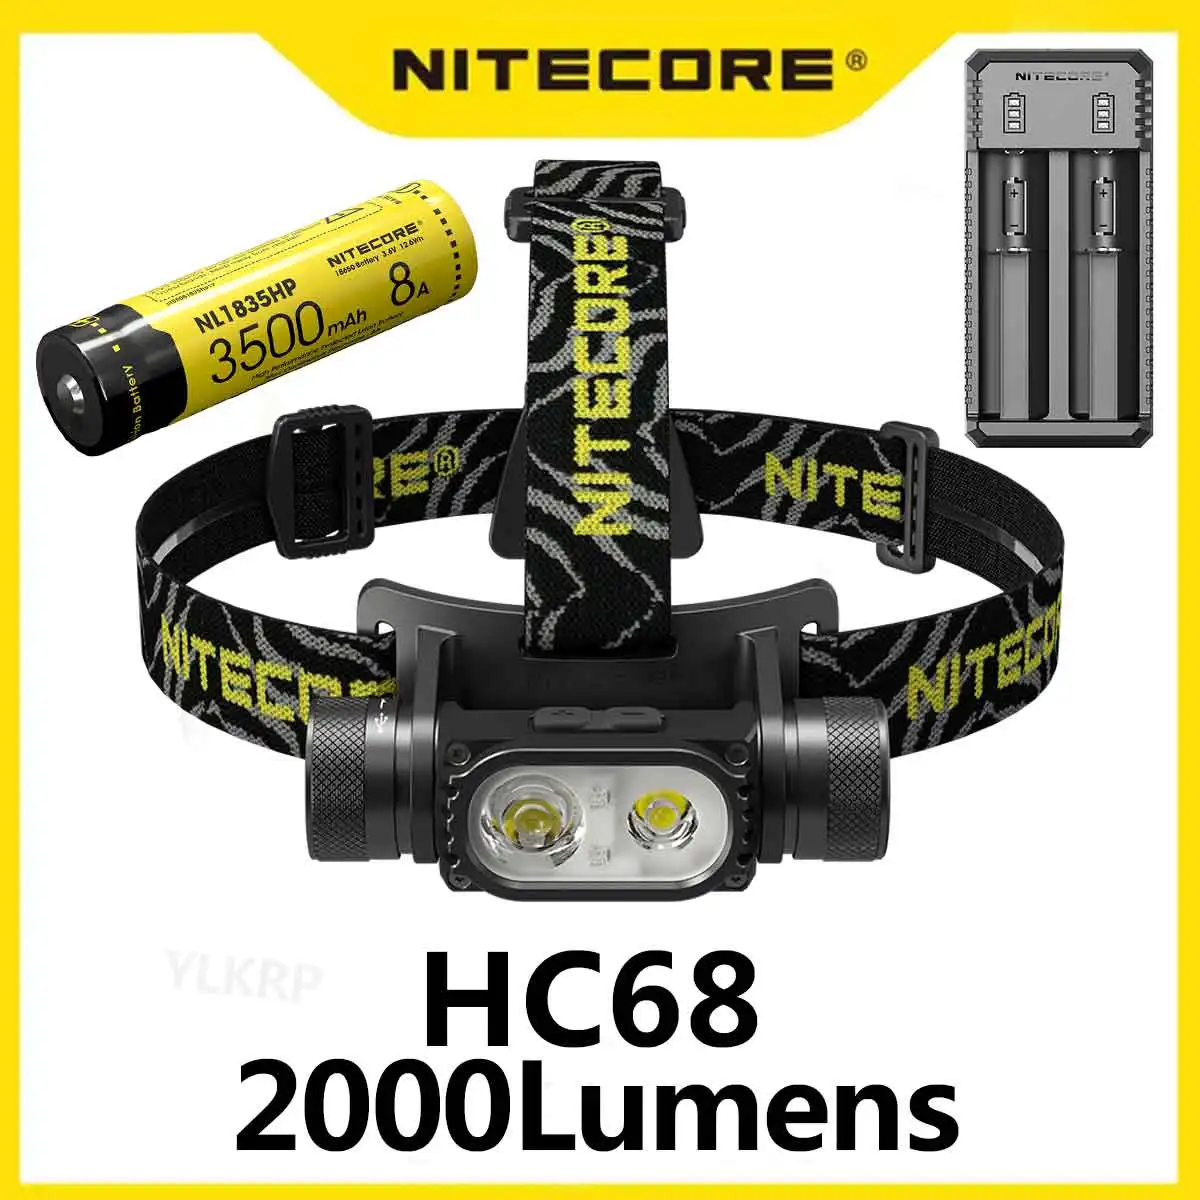 Nitecore hc68 2000ルーメン電子フォーカスパンデュアルライトソースヘッドランプ、パッケージには1つのバッテリーが含まれています  AliExpress